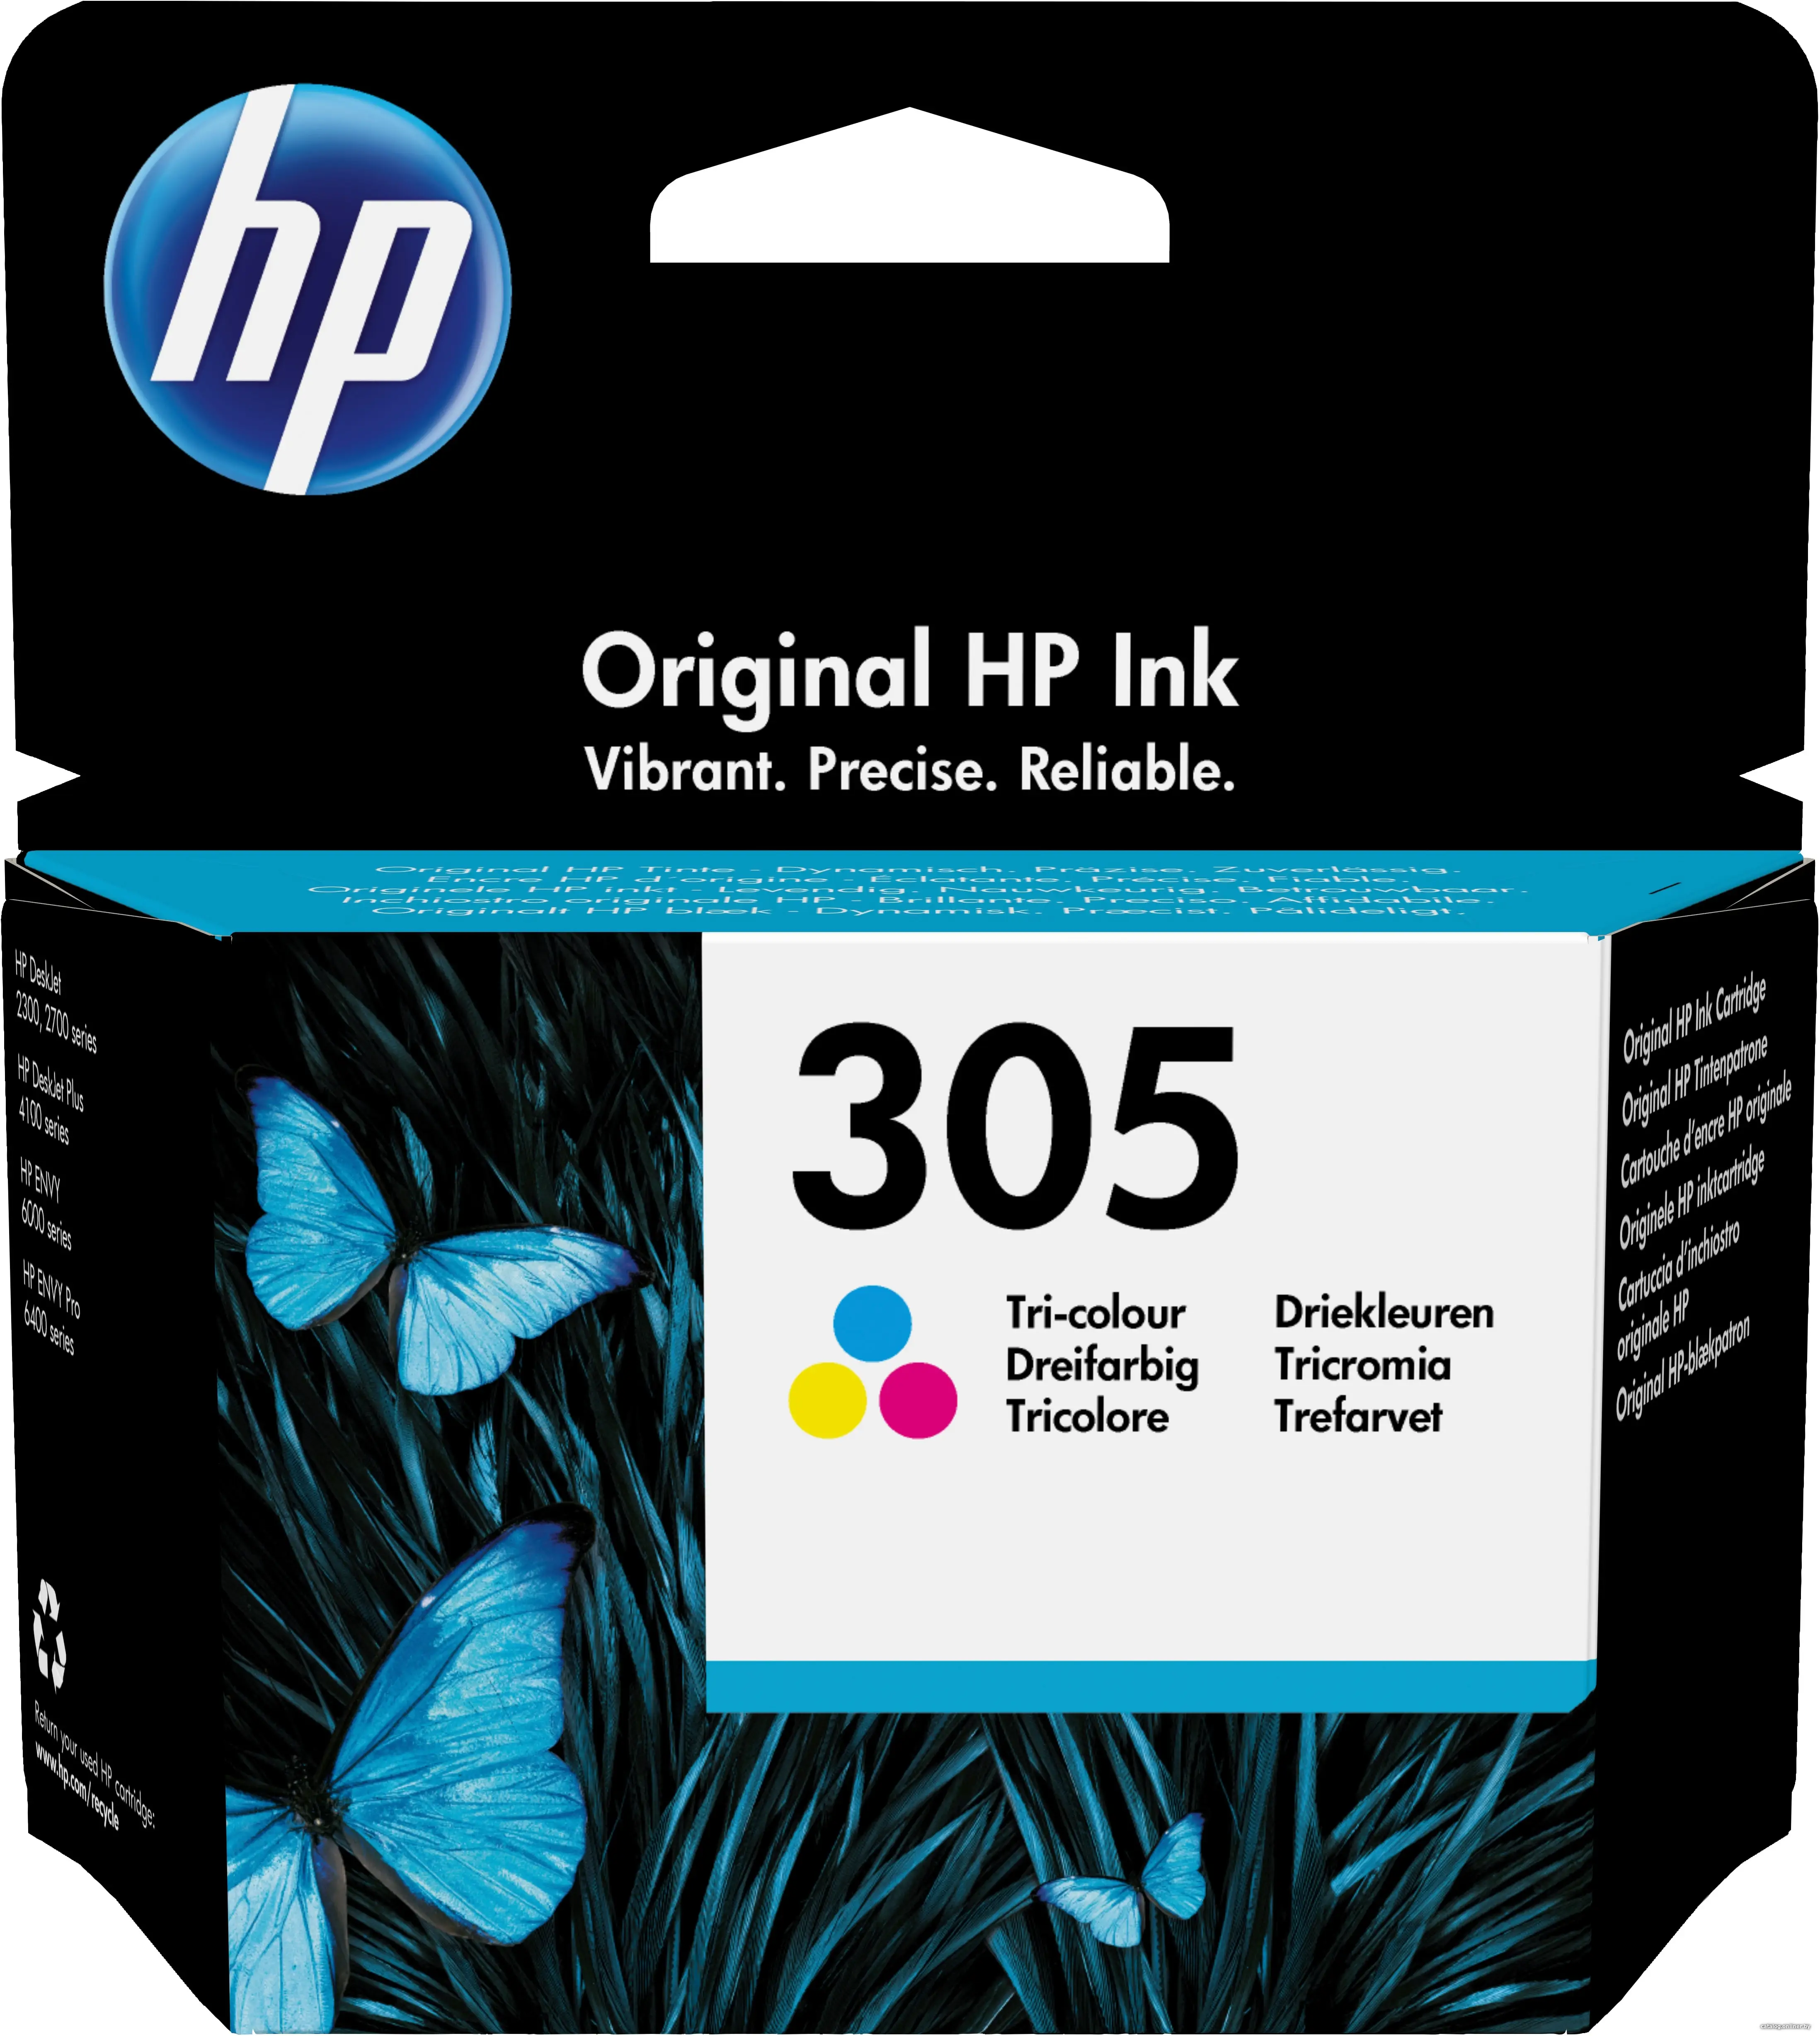 Купить HP 305 Tri-color Original Ink Cartridge картридж, цена, опт и розница